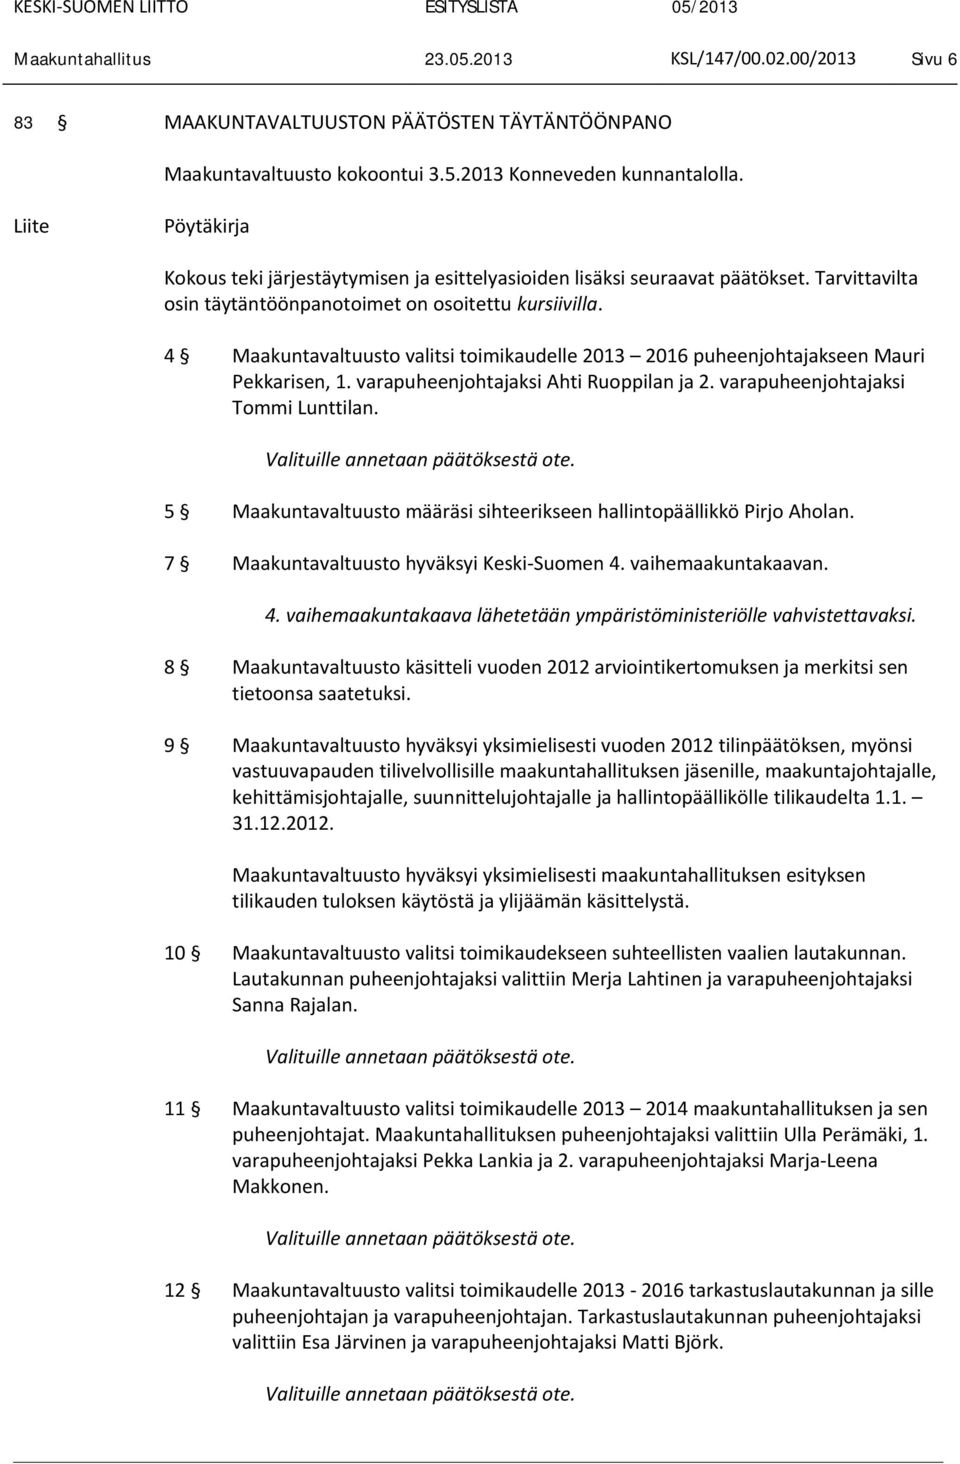 4 Maakuntavaltuusto valitsi toimikaudelle 2013 2016 puheenjohtajakseen Mauri Pekkarisen, 1. varapuheenjohtajaksi Ahti Ruoppilan ja 2. varapuheenjohtajaksi Tommi Lunttilan.